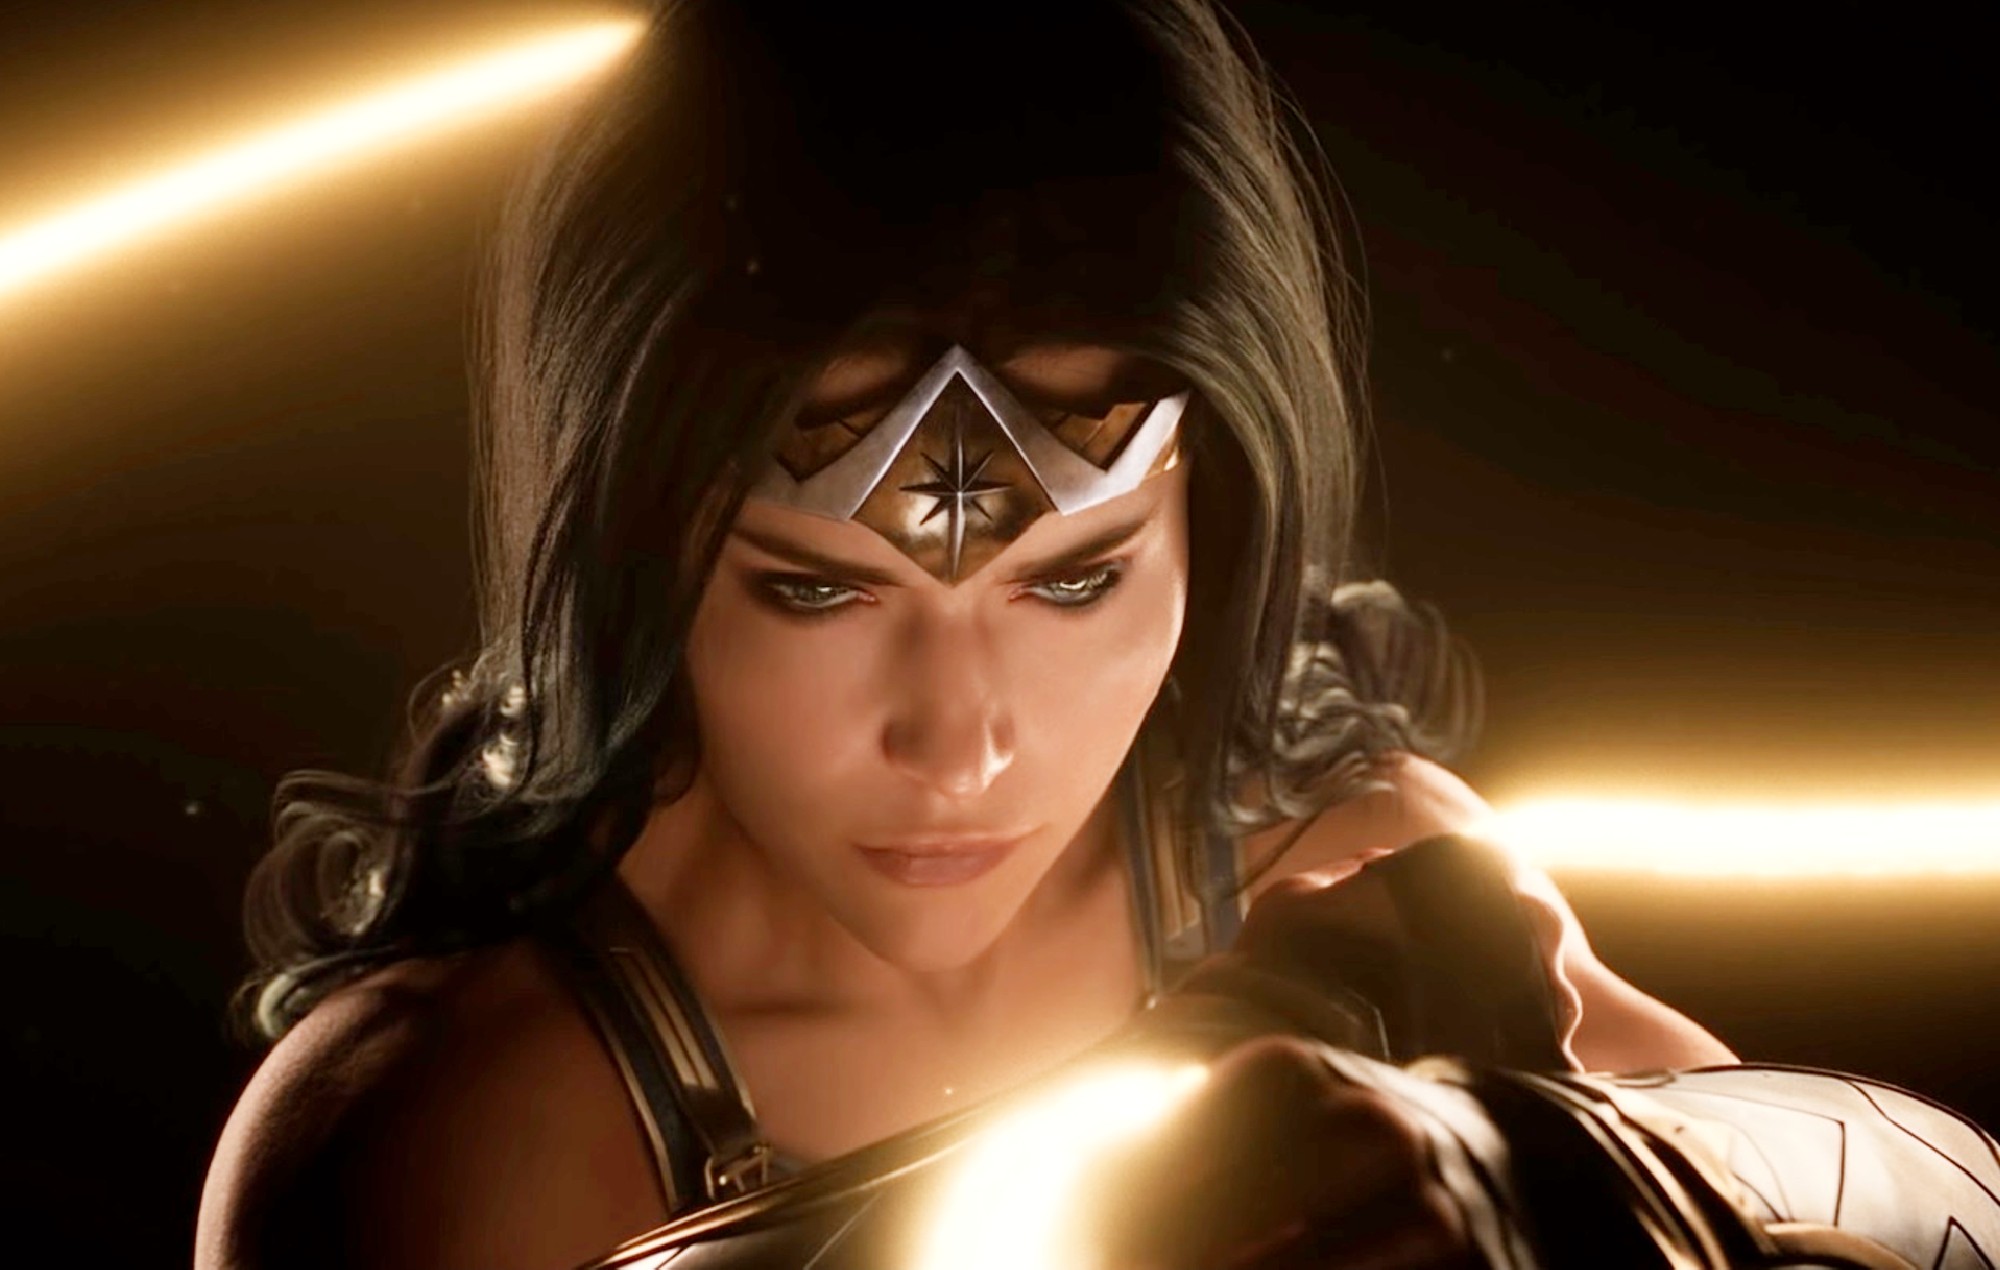 El material gráfico filtrado de 'Wonder Woman' podría estar relacionado con su sistema Némesis